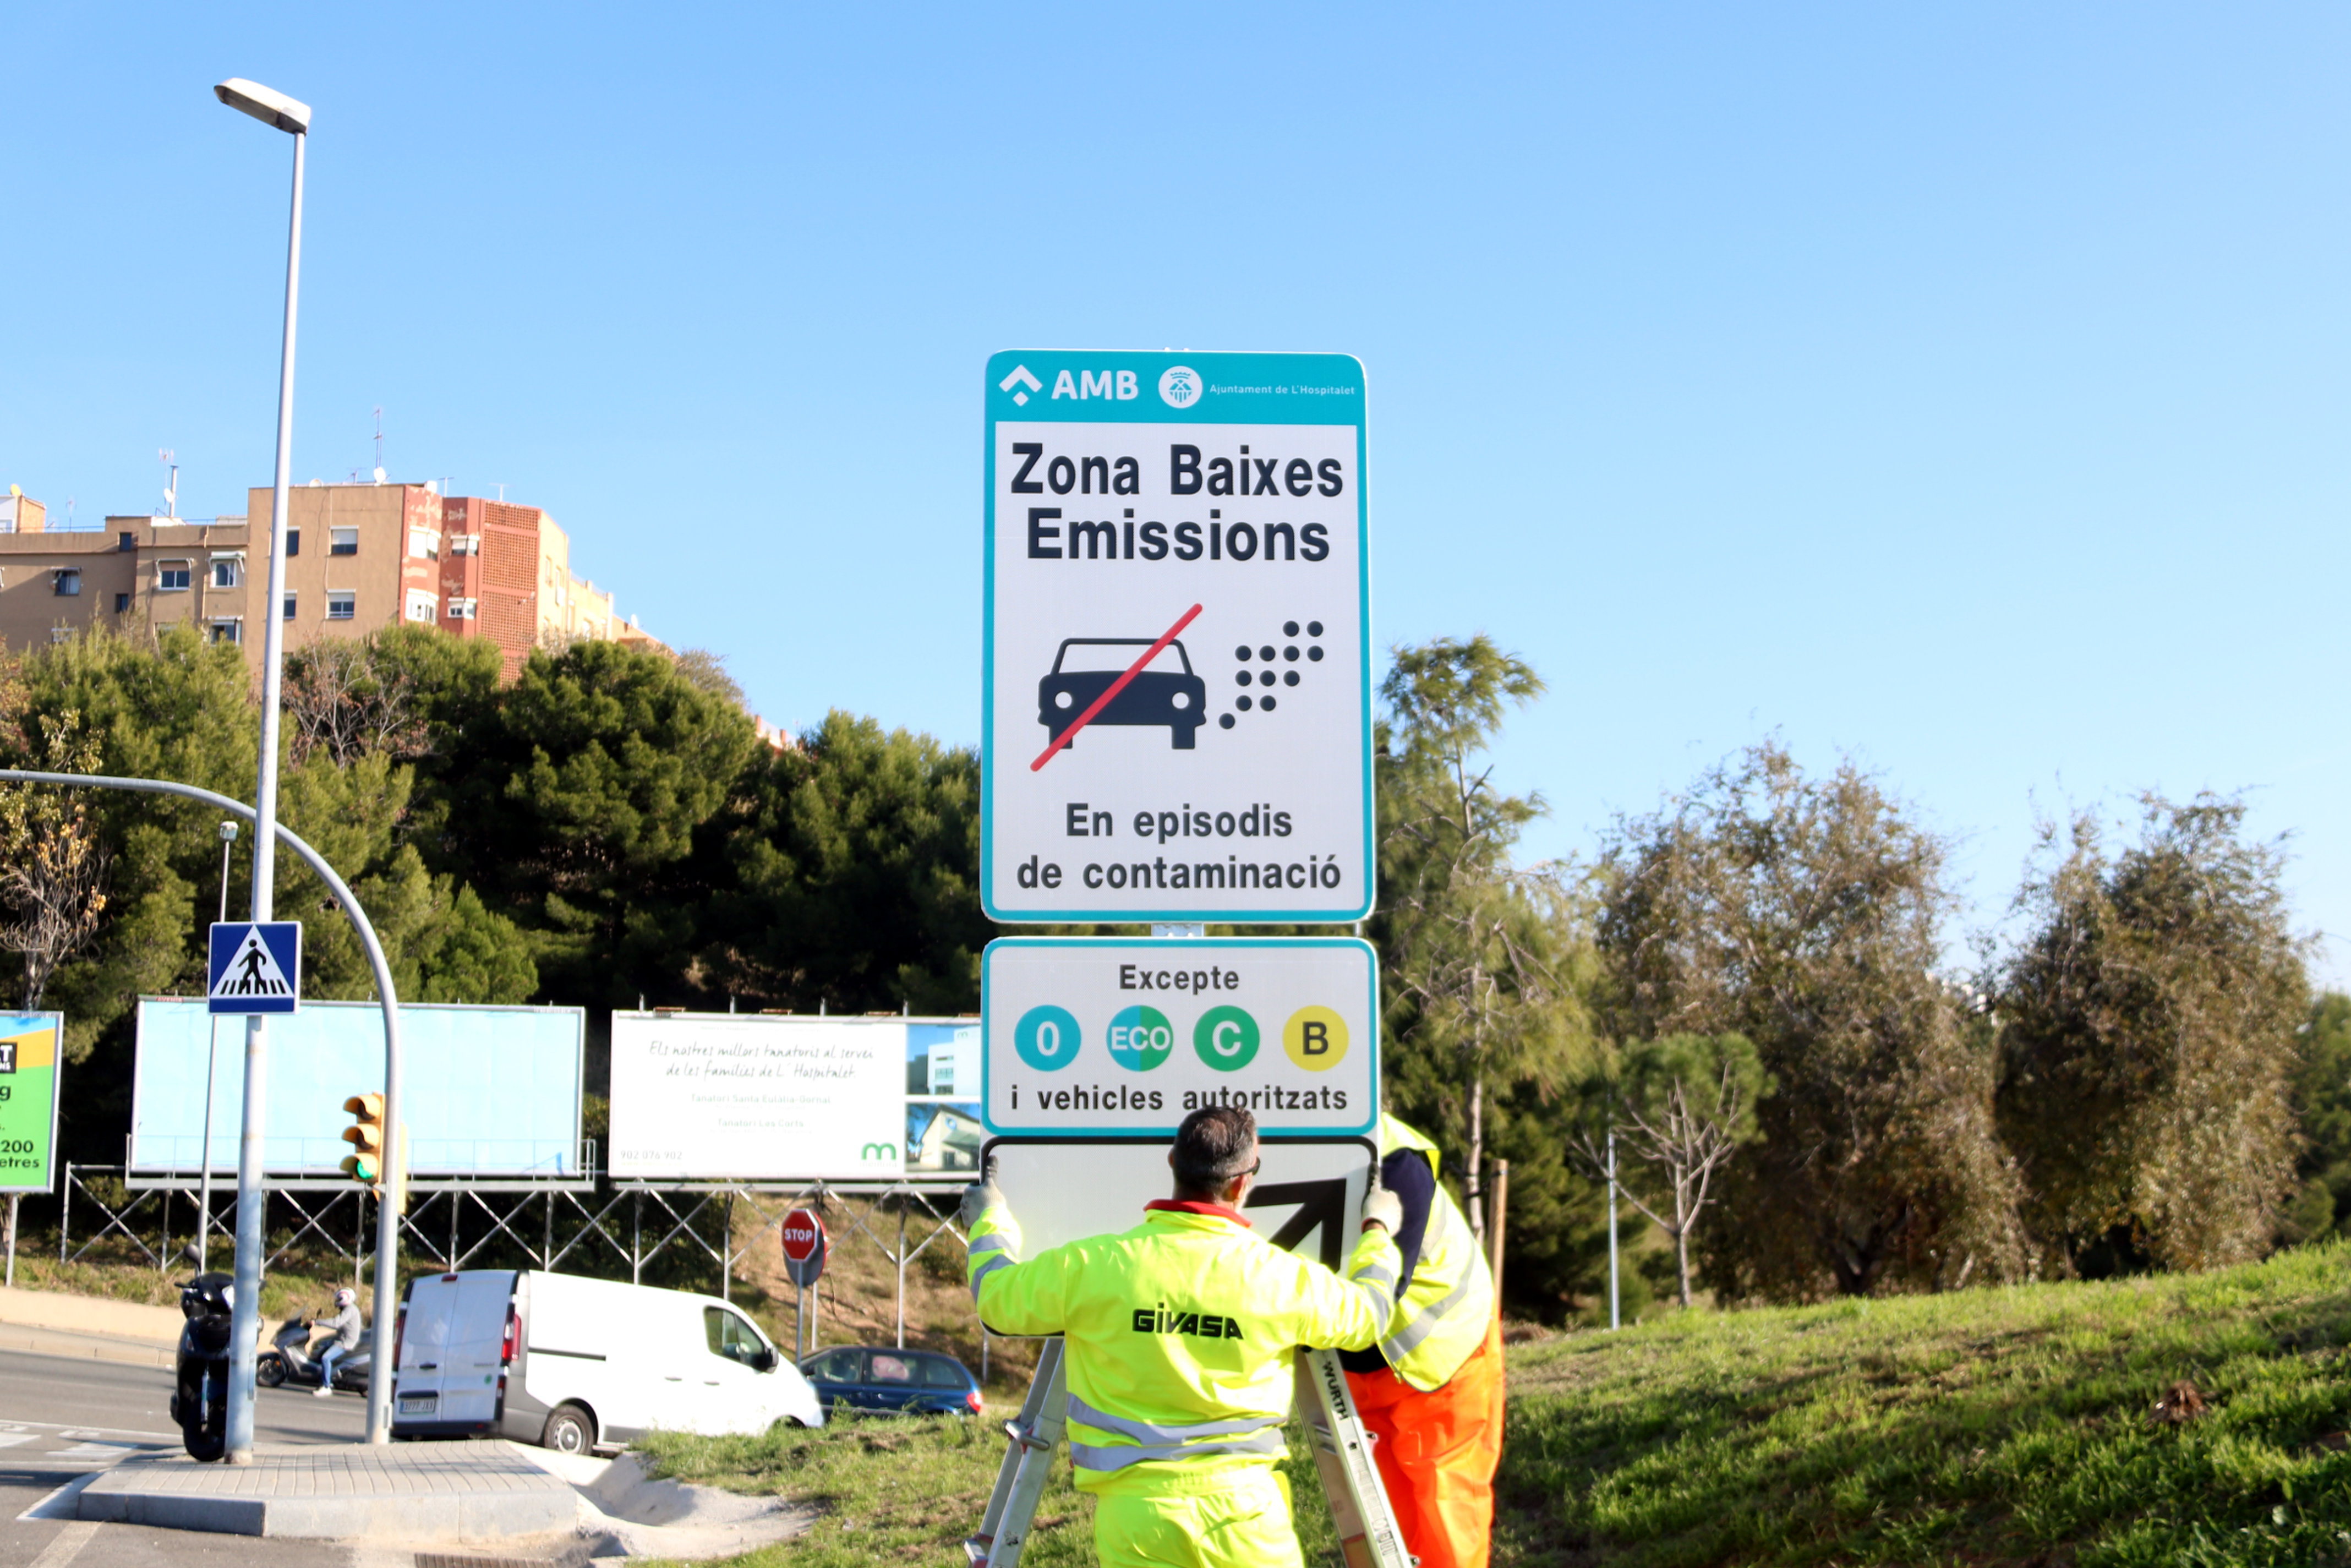 S'activa la restricció als cotxes sense etiqueta a Barcelona i municipis circumdants en cas d'episodi de contaminació